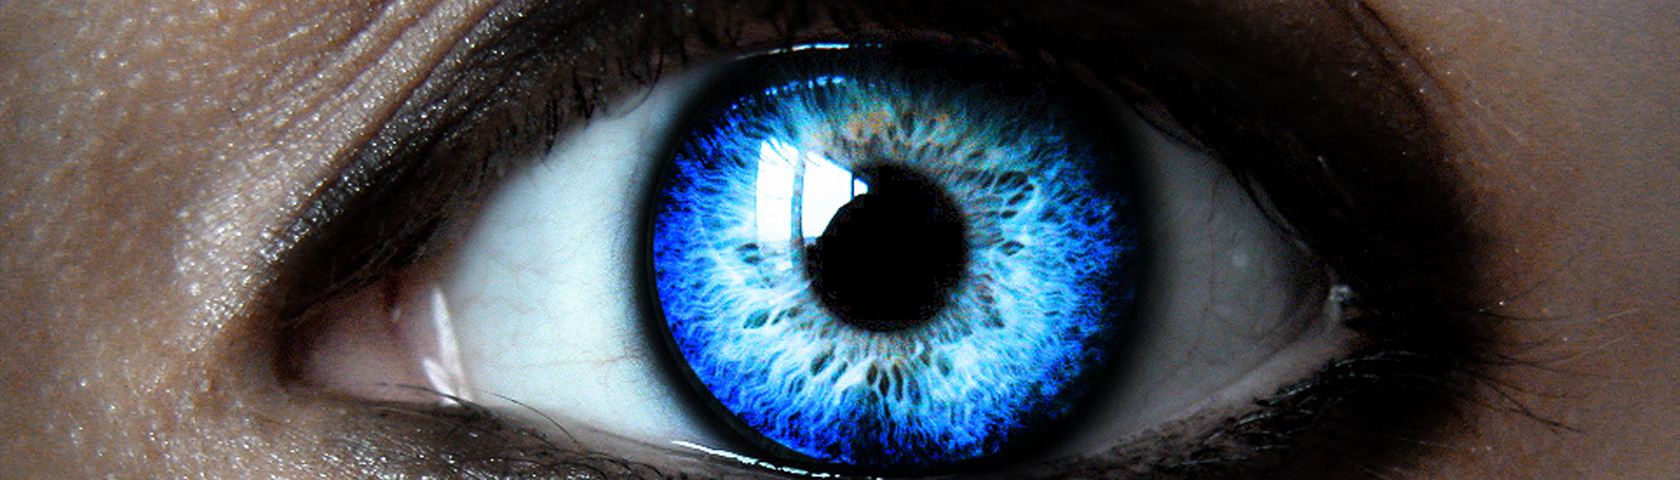 Bright Blue Eye